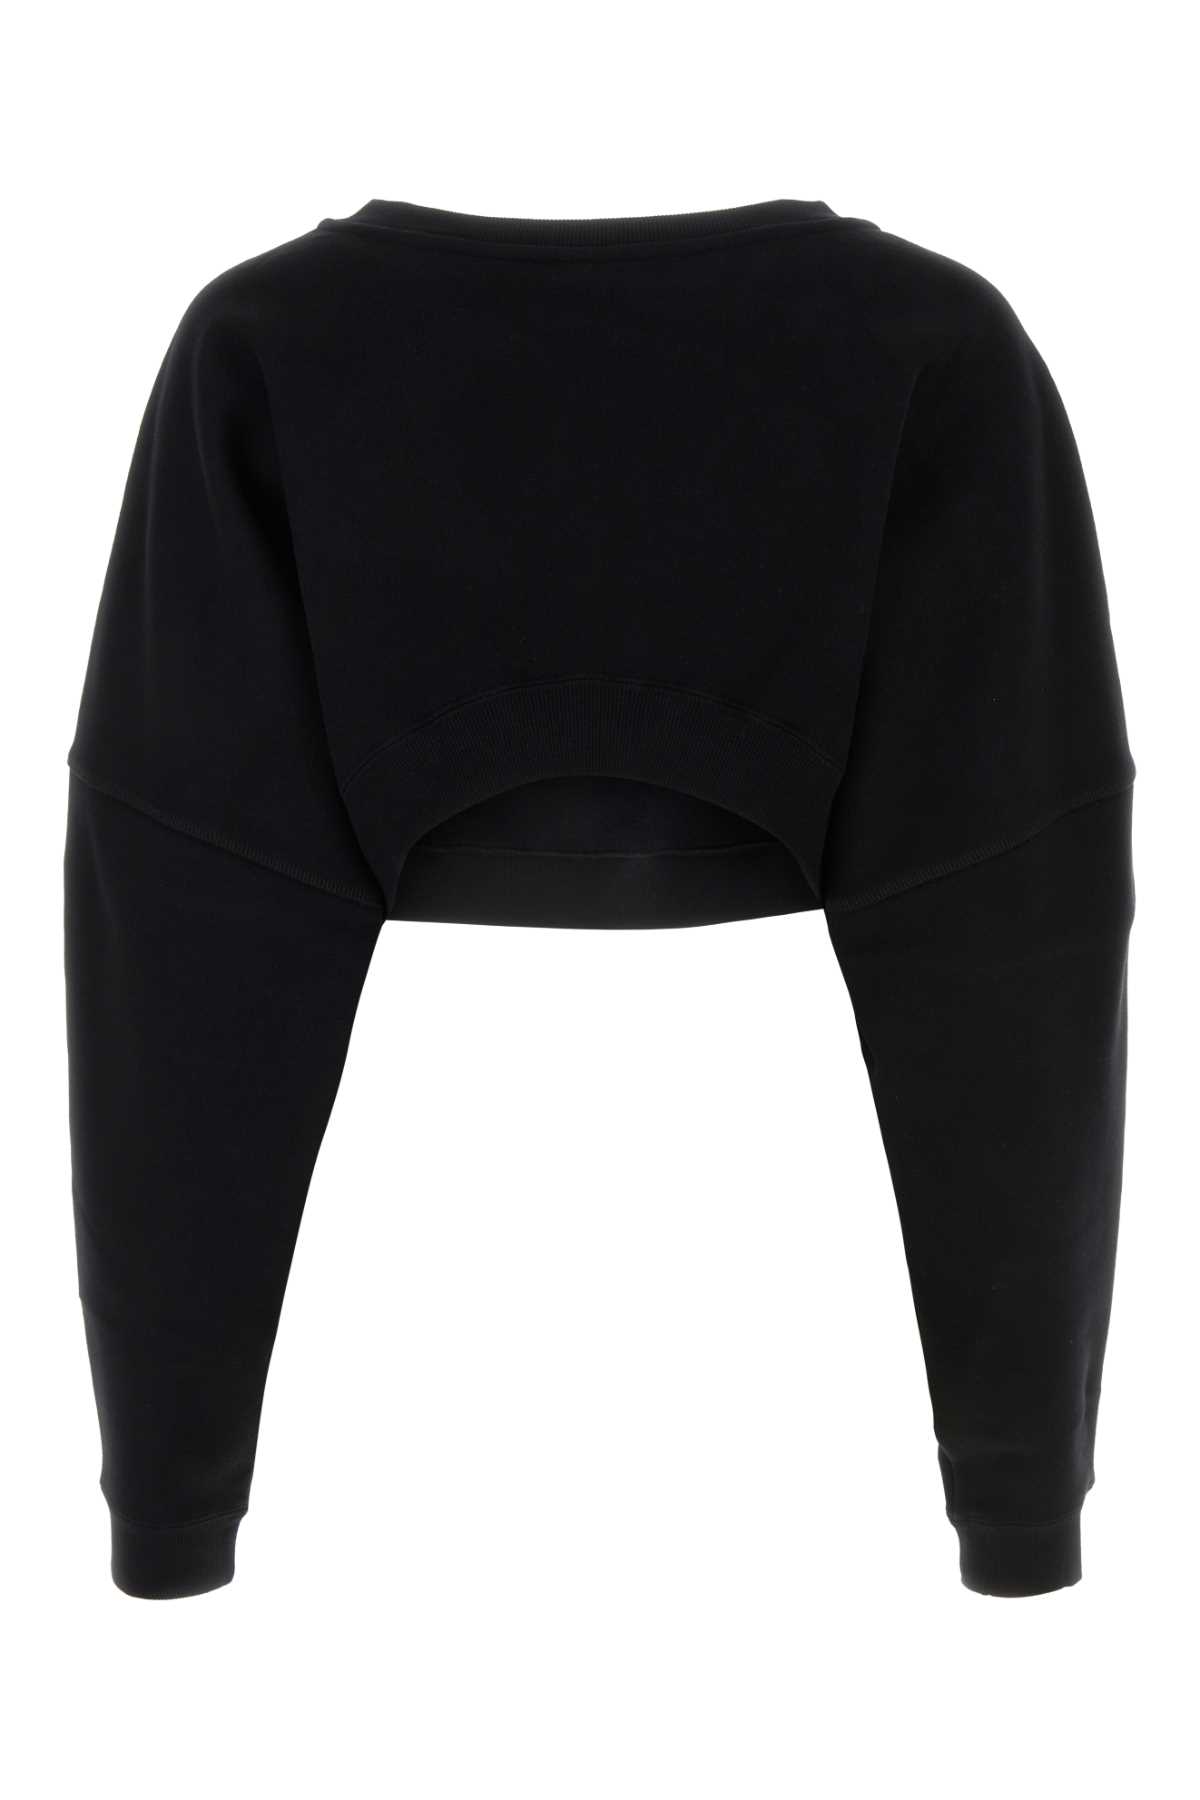 Saint Laurent Black Cotton Sweatshirt In Noir